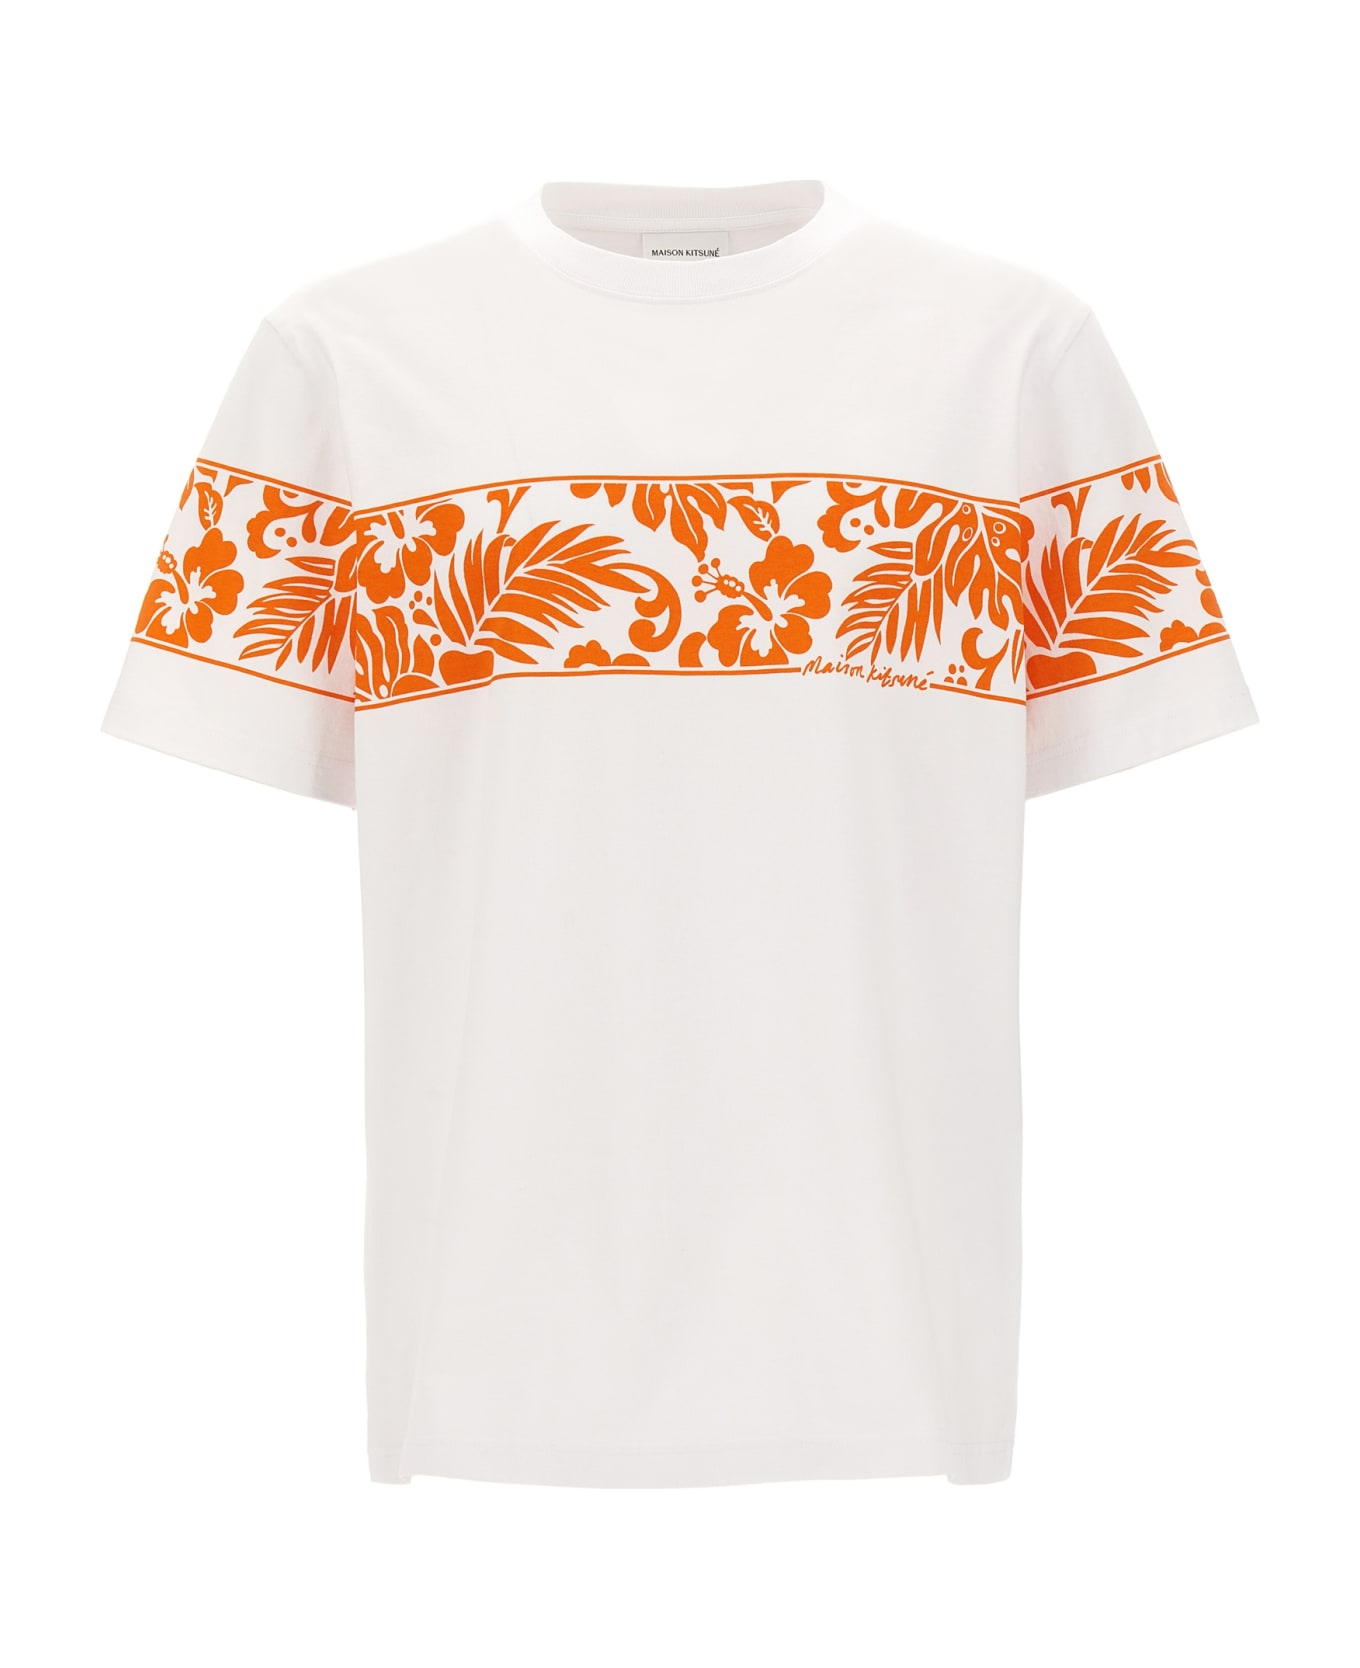 Maison Kitsuné 'tropical Band' T-shirt - Multicolor シャツ